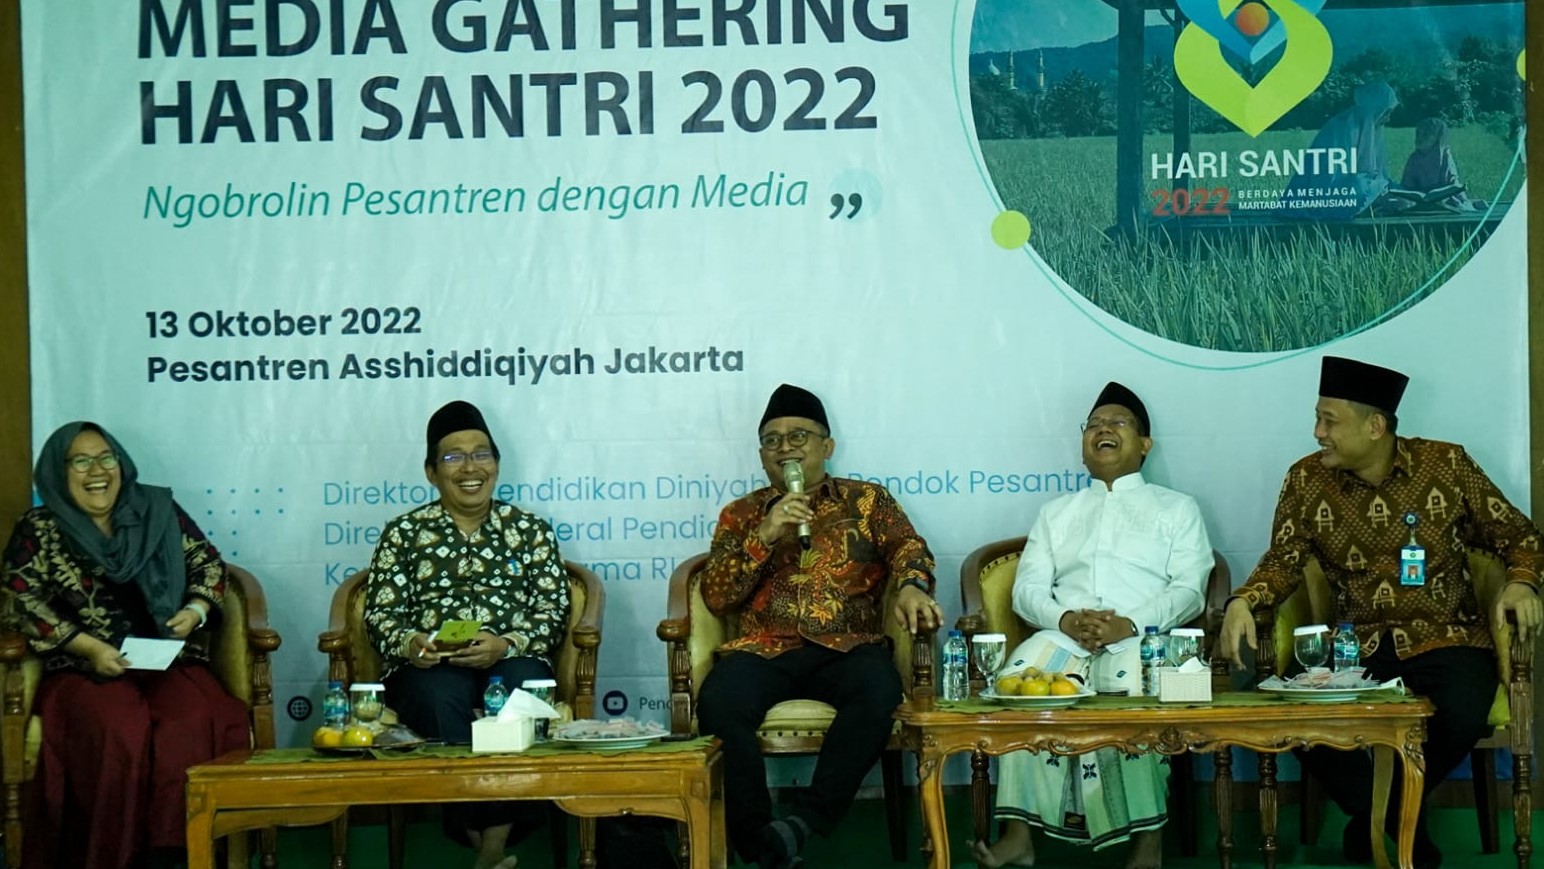 Jubir Kemenag, Direktur Pendidikan Diniyah dan Pontren, Stafsus Menag, KH. Mahrus Iskandar dan Karo HDI pada Media Gathering Hari Santri 2022